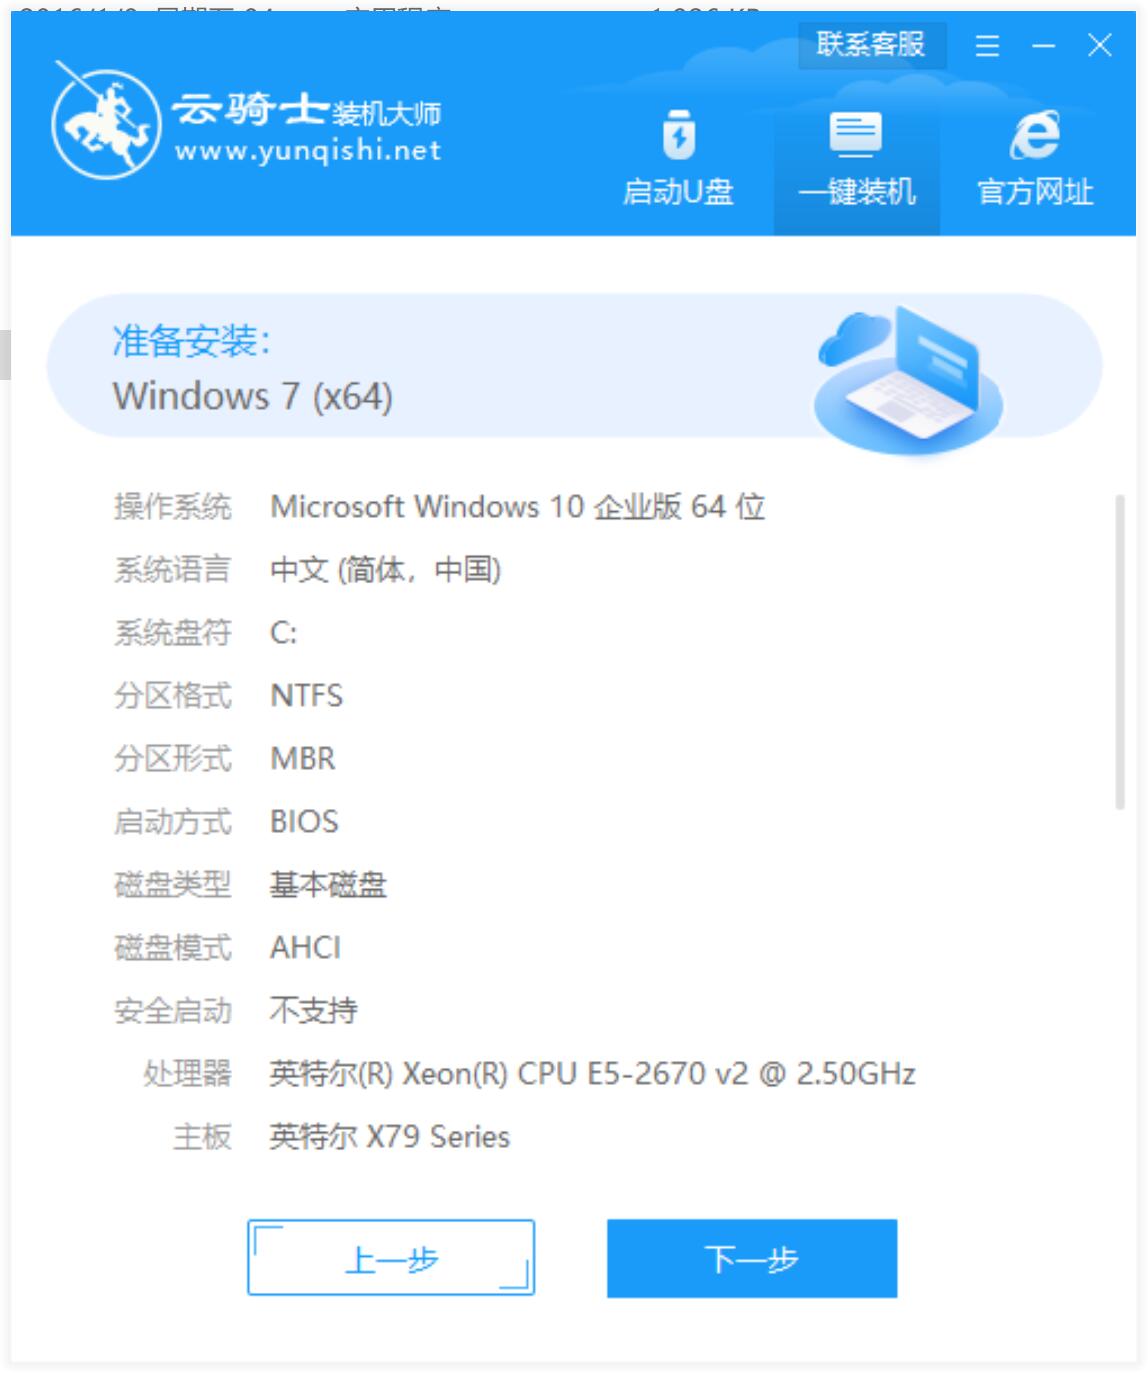 神州笔记本专用系统  WIN7 64位  纯净中文旗舰版系统下载 V2021.07(6)